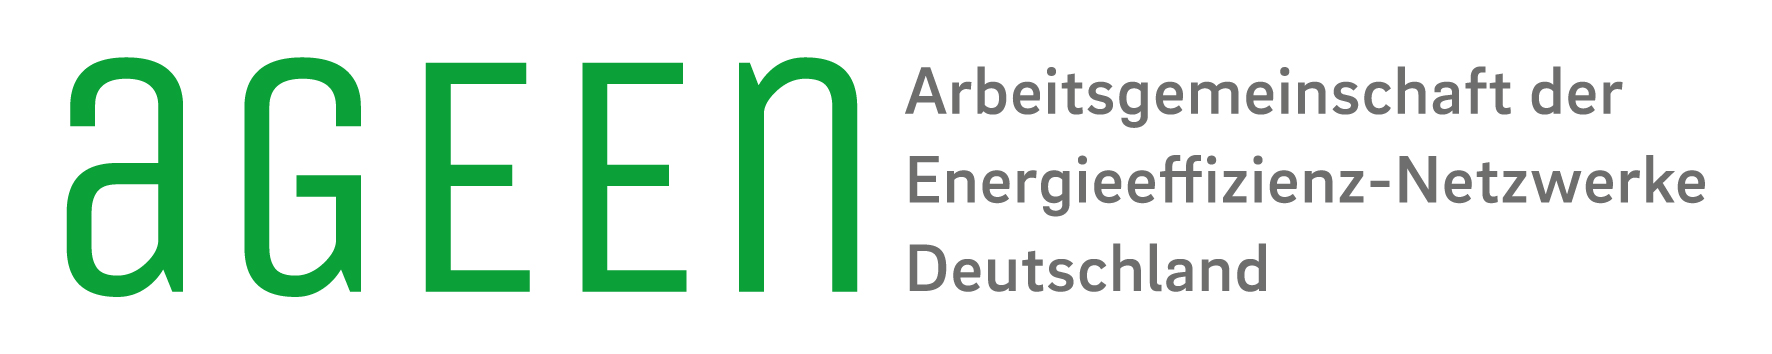 Kuraray_Foto_1_Energieeffizienz-Netzwerk_Rhein-Main_Logo_AGEEN